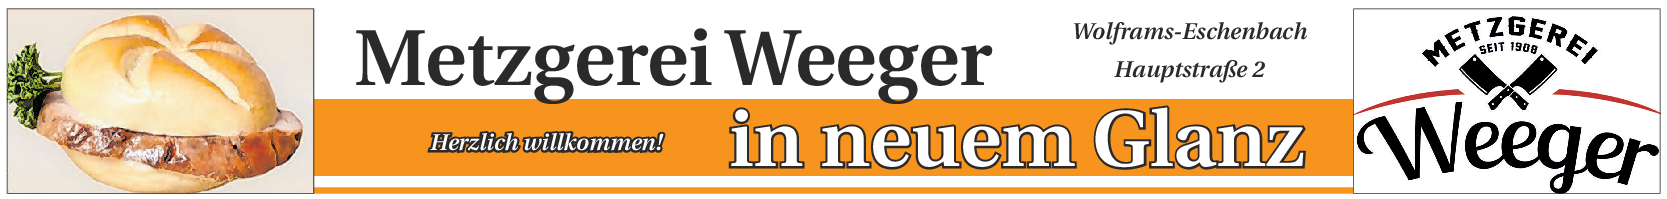 Die Metzgerei Weeger in der Hauptstraße 2 in Wolframs-Eschenbach erstrahlt im neuen Glanz